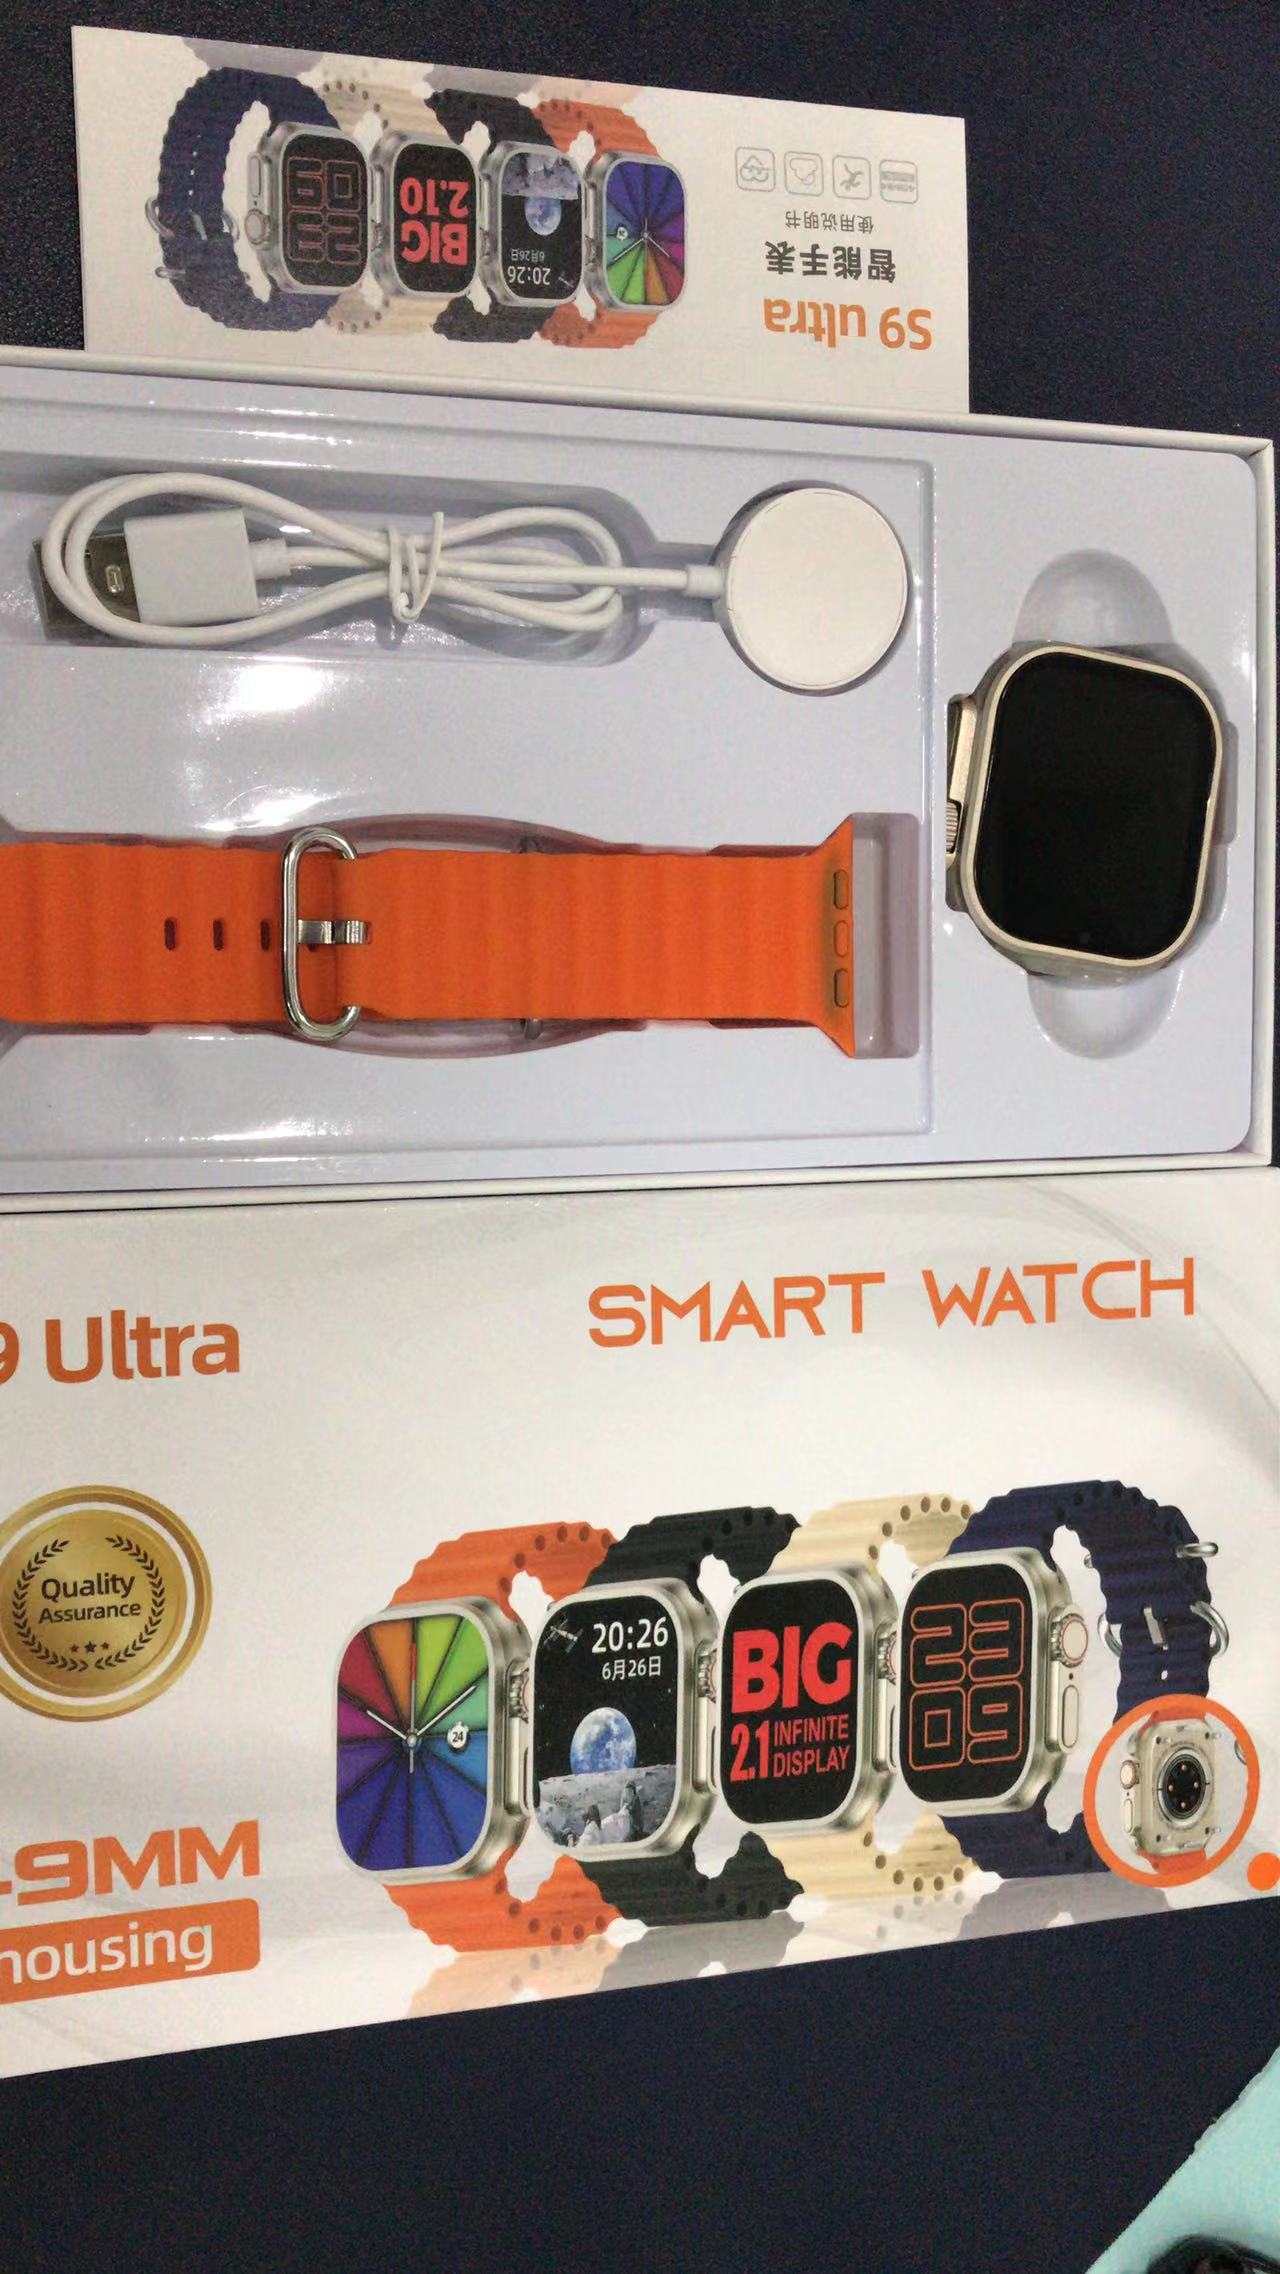 # 6piezas/8piezas Smartwatches S9 Ultra 49mm Pantalla Full Hd - Reloj Inteligente Para Con iPhone Y Android Emprende Negocios Mayoreo